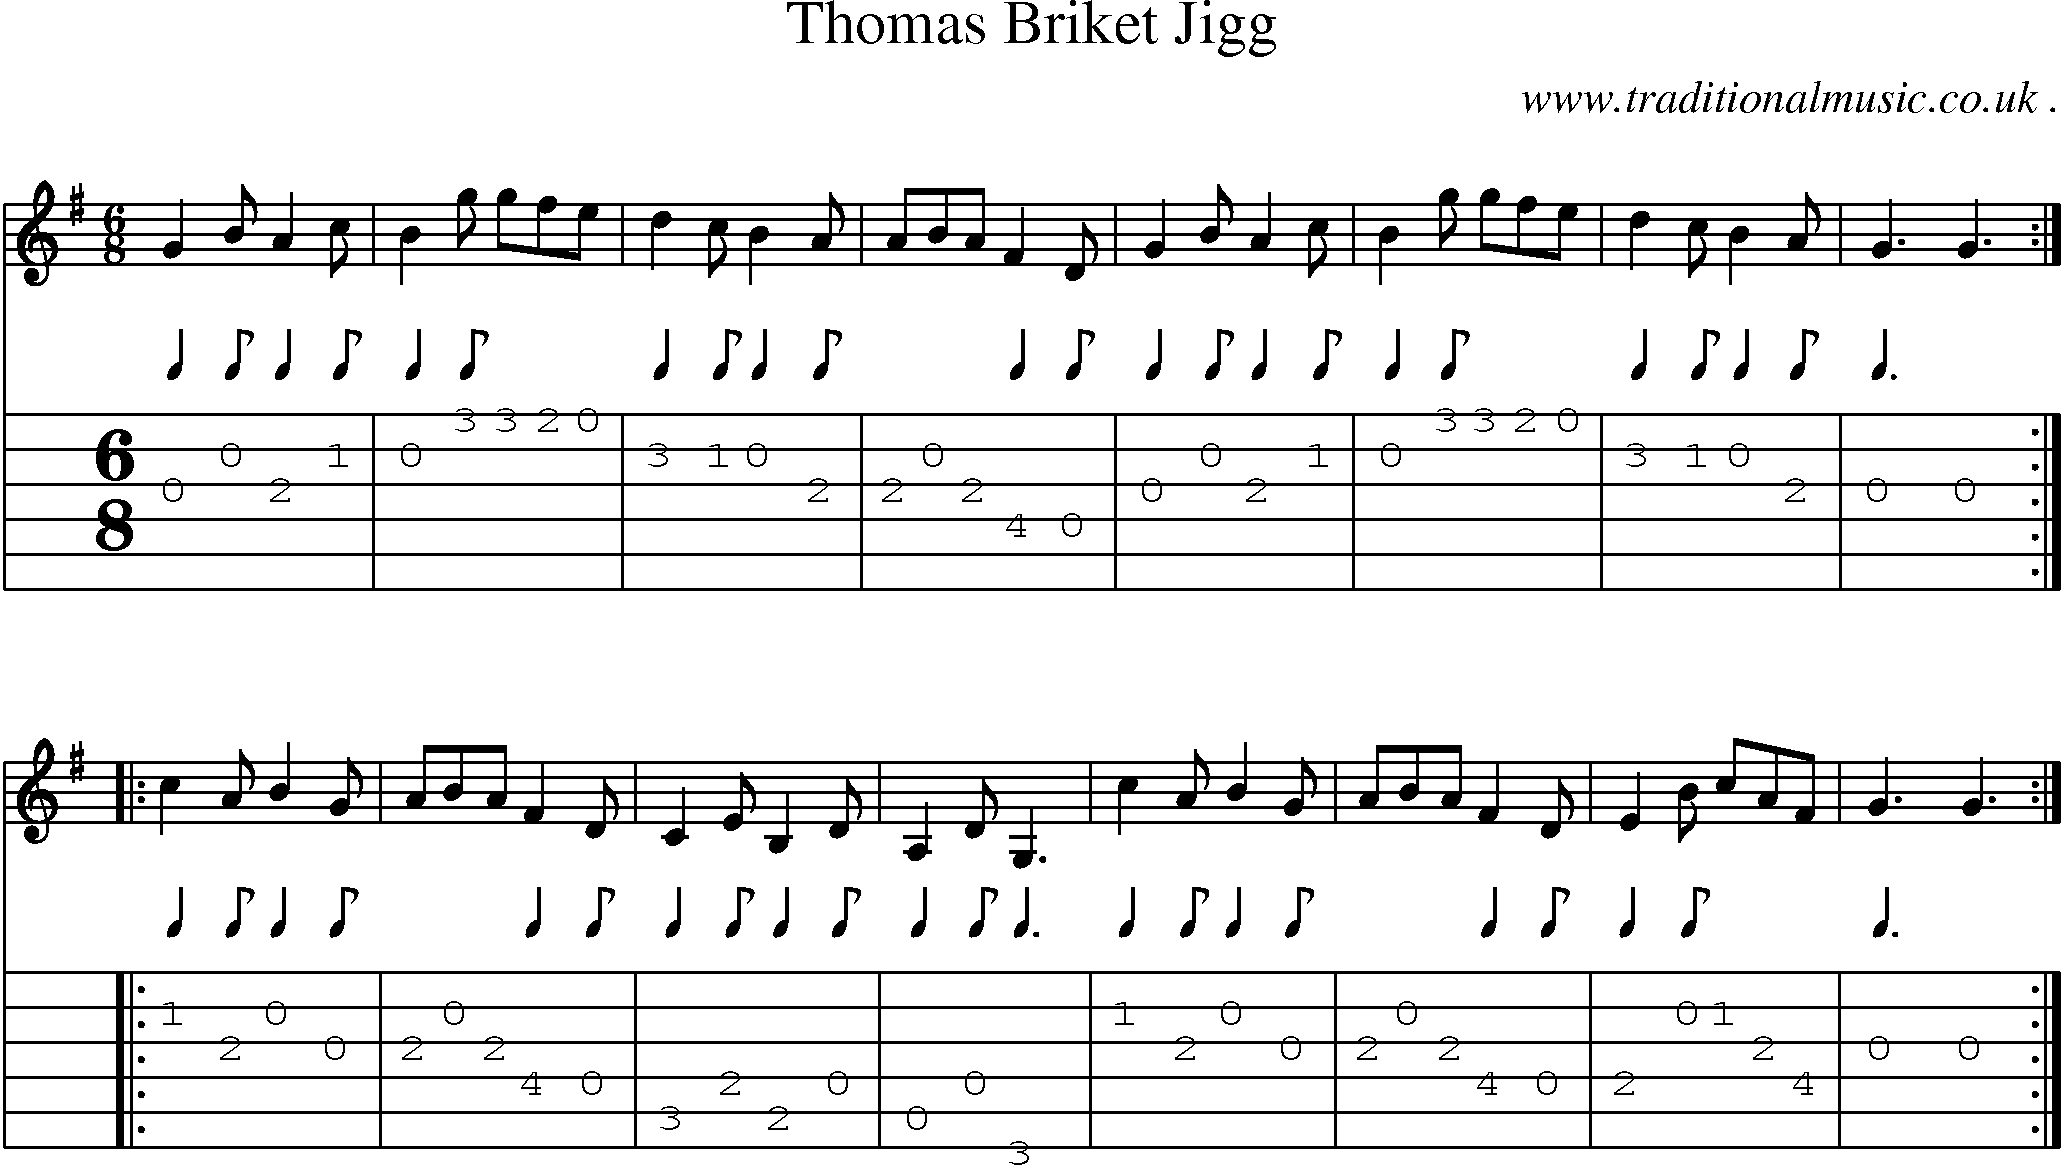 Sheet-Music and Guitar Tabs for Thomas Briket Jigg